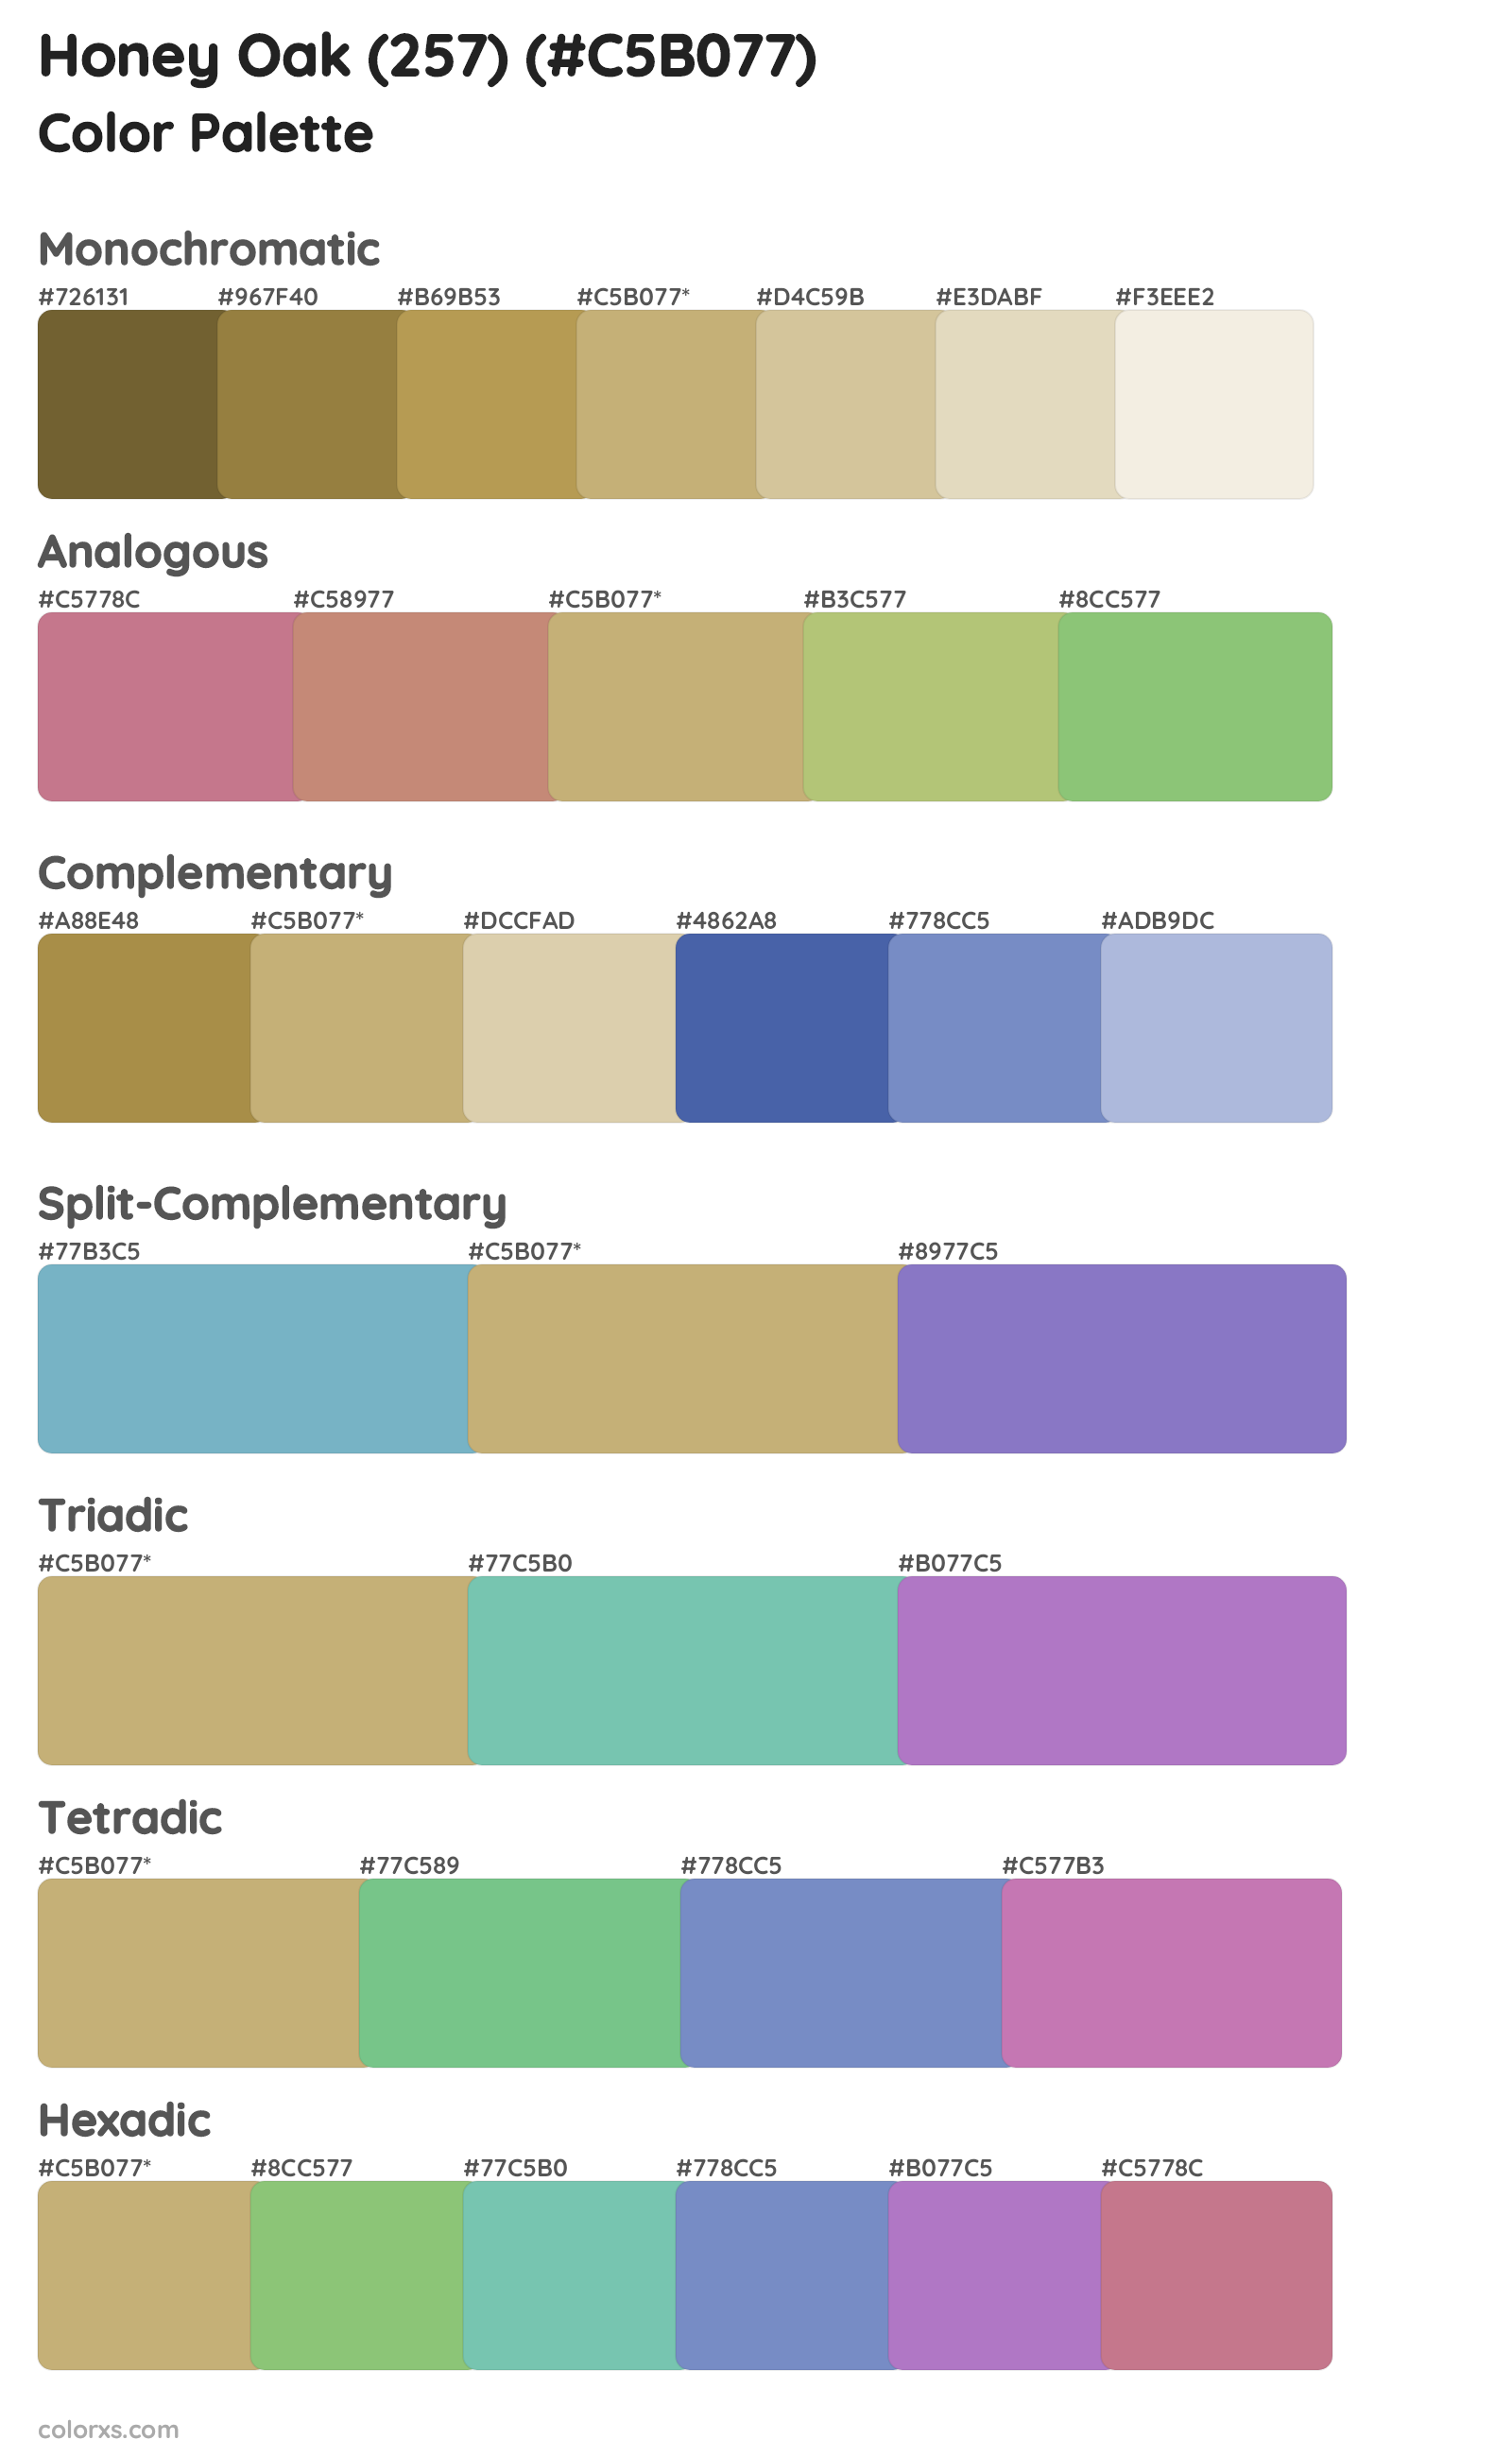 Honey Oak (257) Color Scheme Palettes